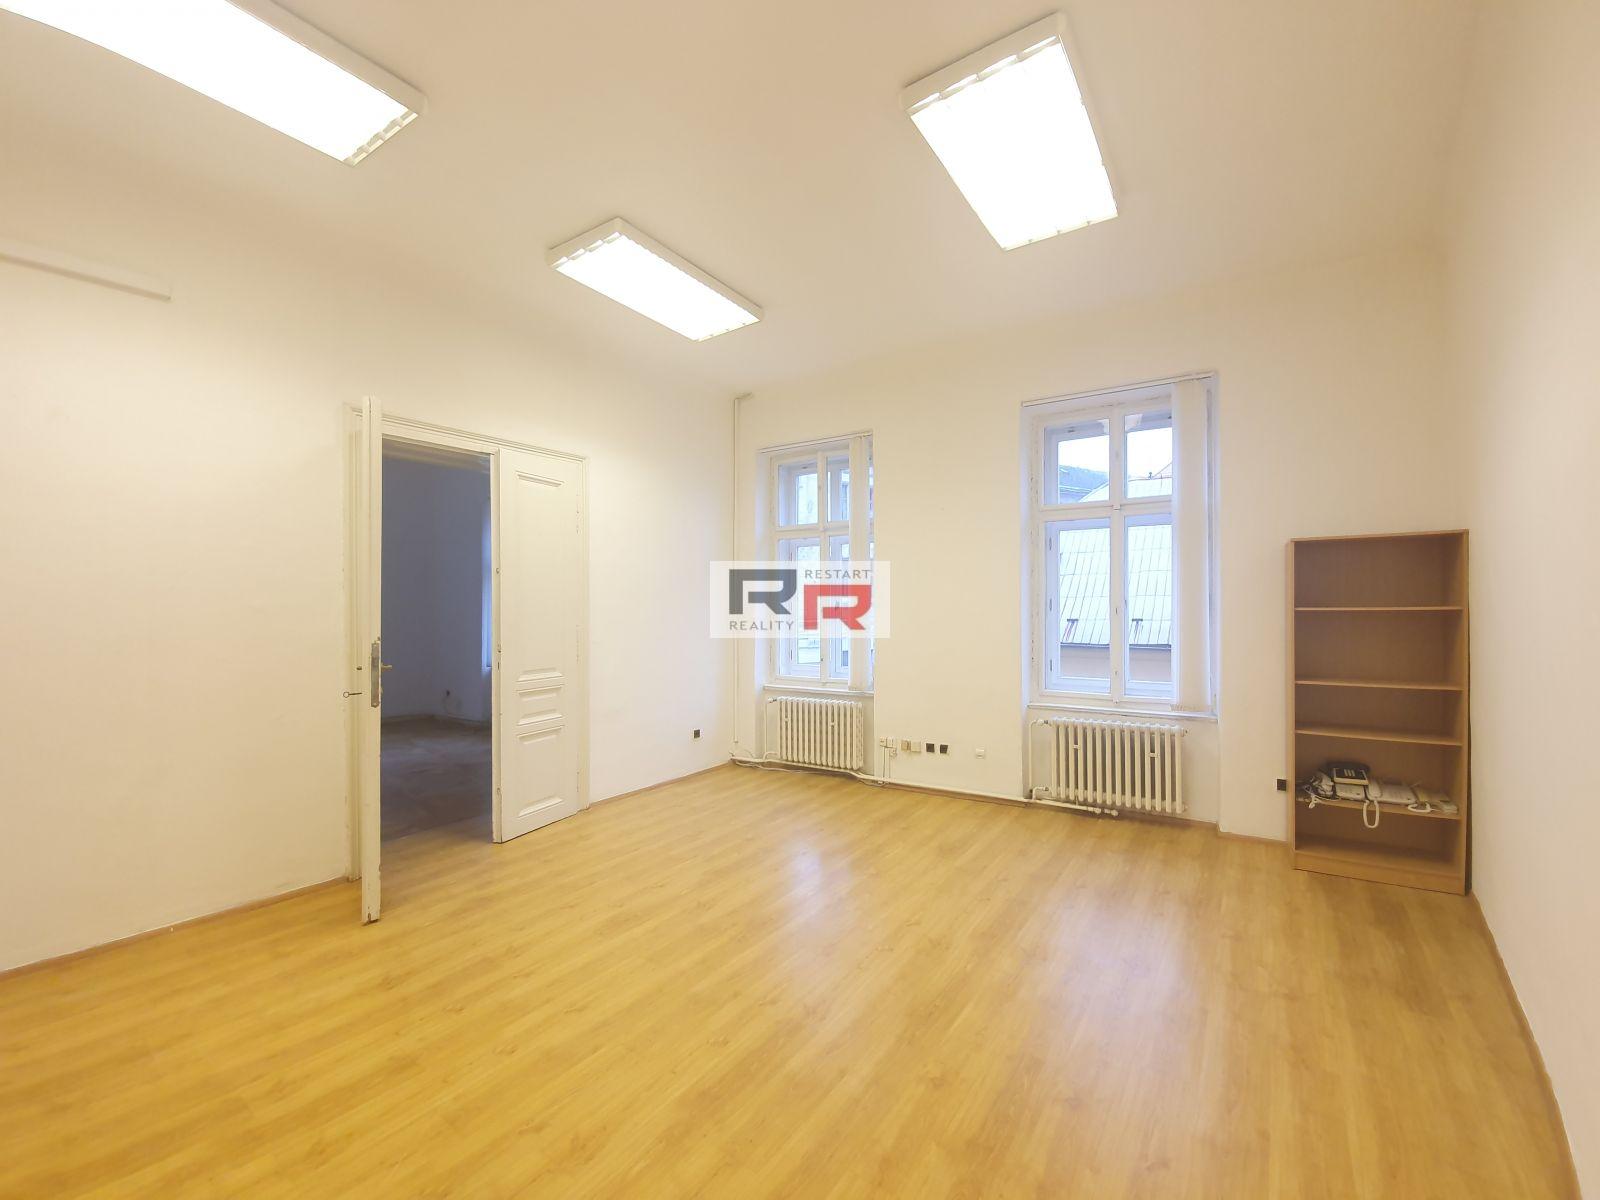 Pronájem kanceláře o velikosti 51,05m2 na tř. Svobody v  Olomouci, obrázek č. 2